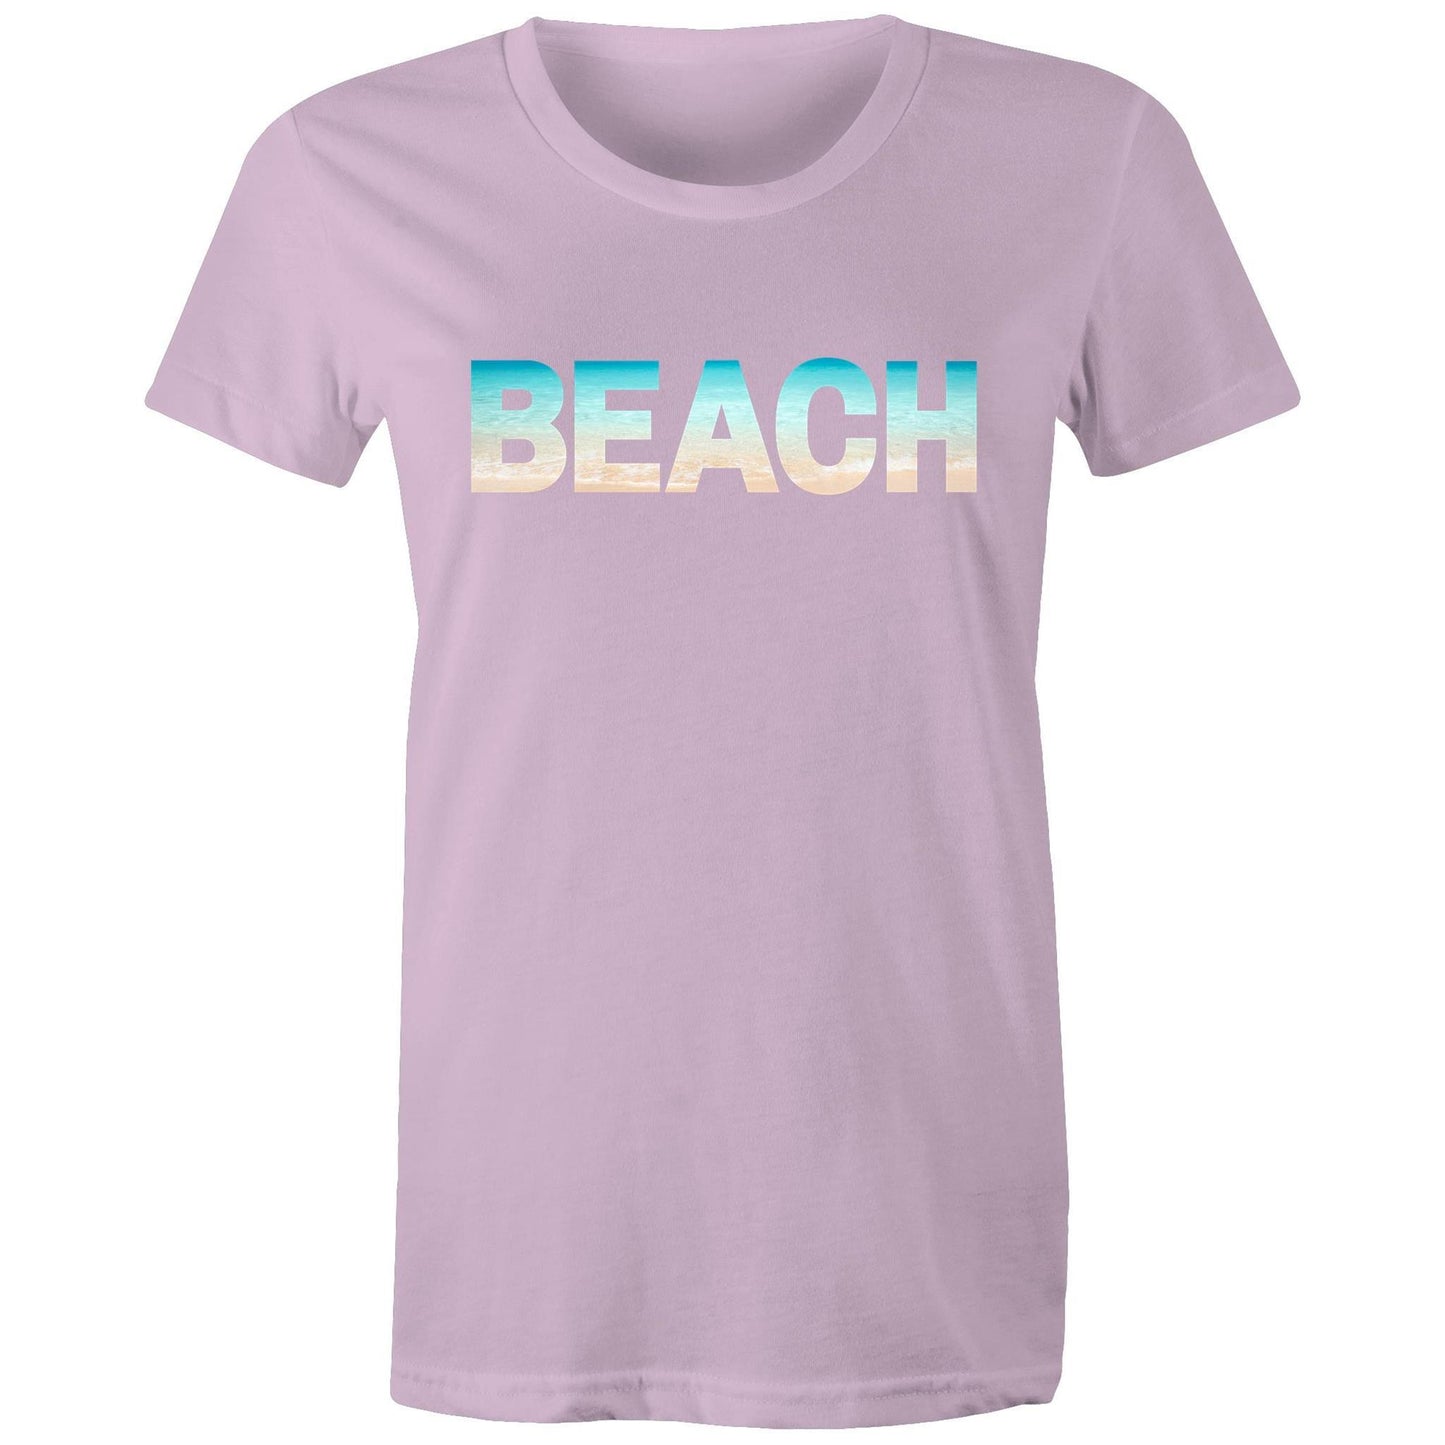 Beach - Women's T-shirt Lavender Womens T-shirt Summer Womens